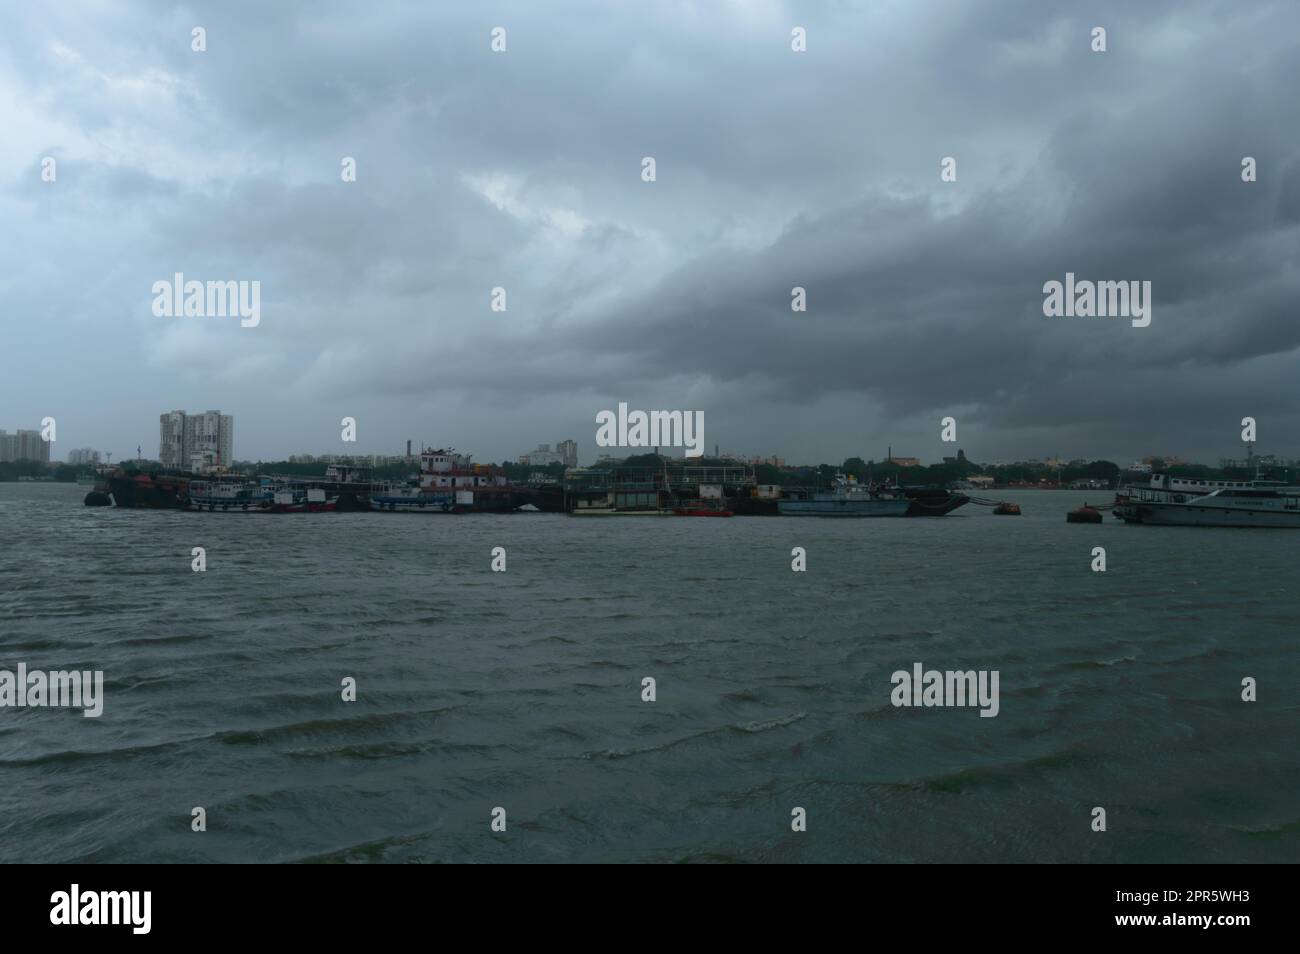 Ferry Bateaux flottant au-dessus de la rivière Ganges à une distance lors d'une journée spectaculaire et nuageux. Magnifique paysage vue horizon de Babu Ghat. Kolkata Bengale occidental Inde Asie du Sud 19 juin 2022 Banque D'Images